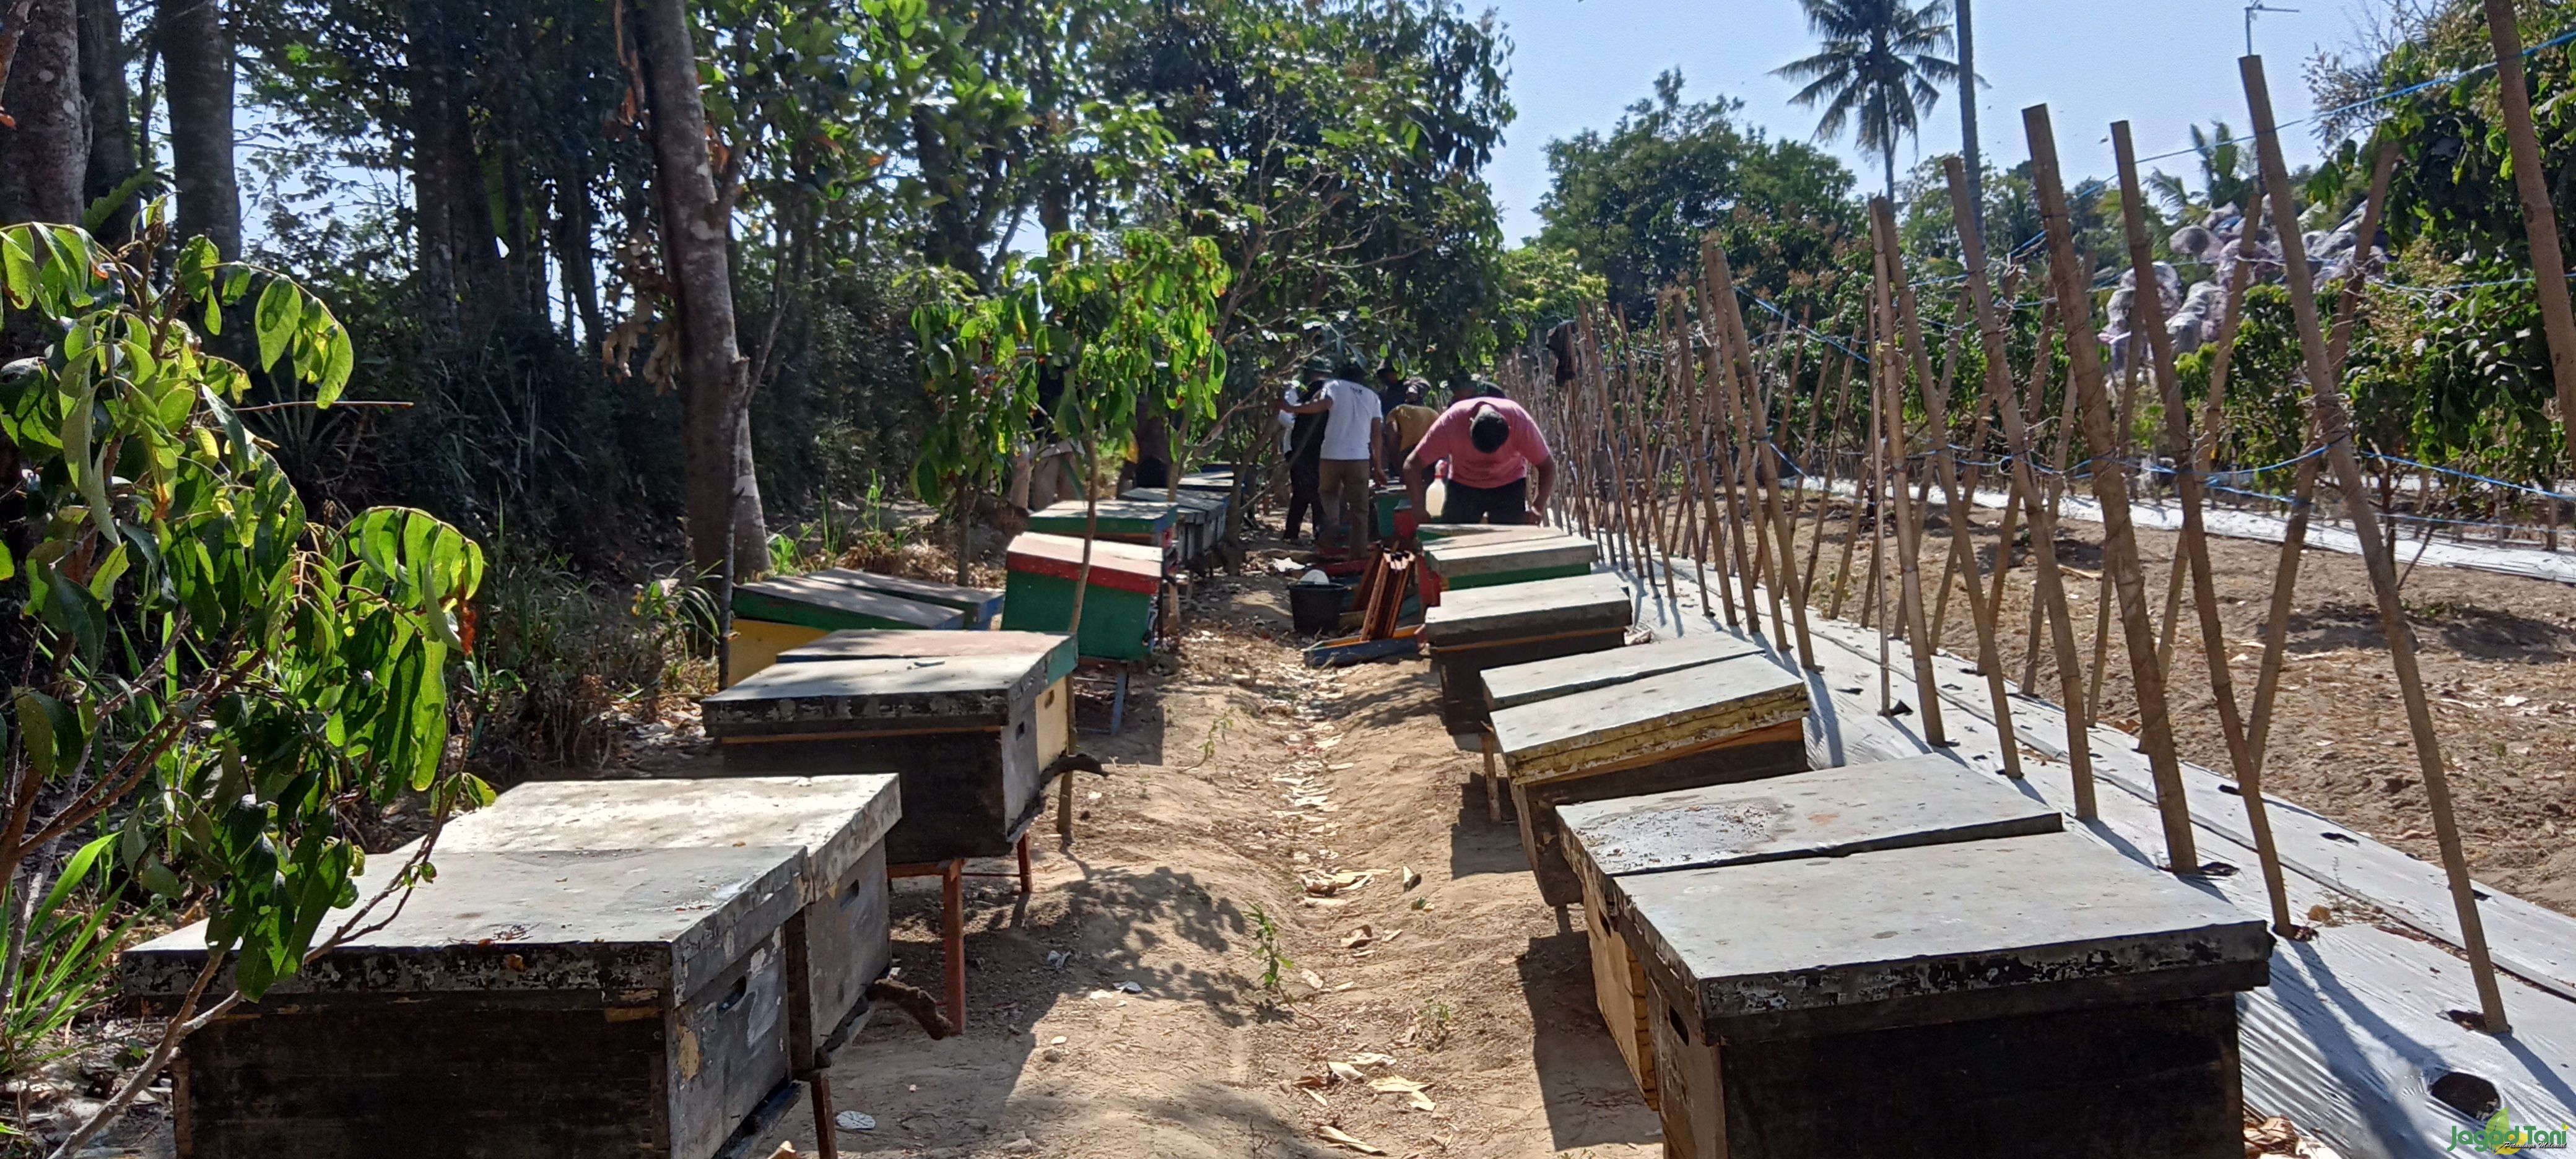 Proses panen madu lebah Apis Mellifera di kebun Putra Merapi Tani di Desa Bengking, Kecamatan Jatino